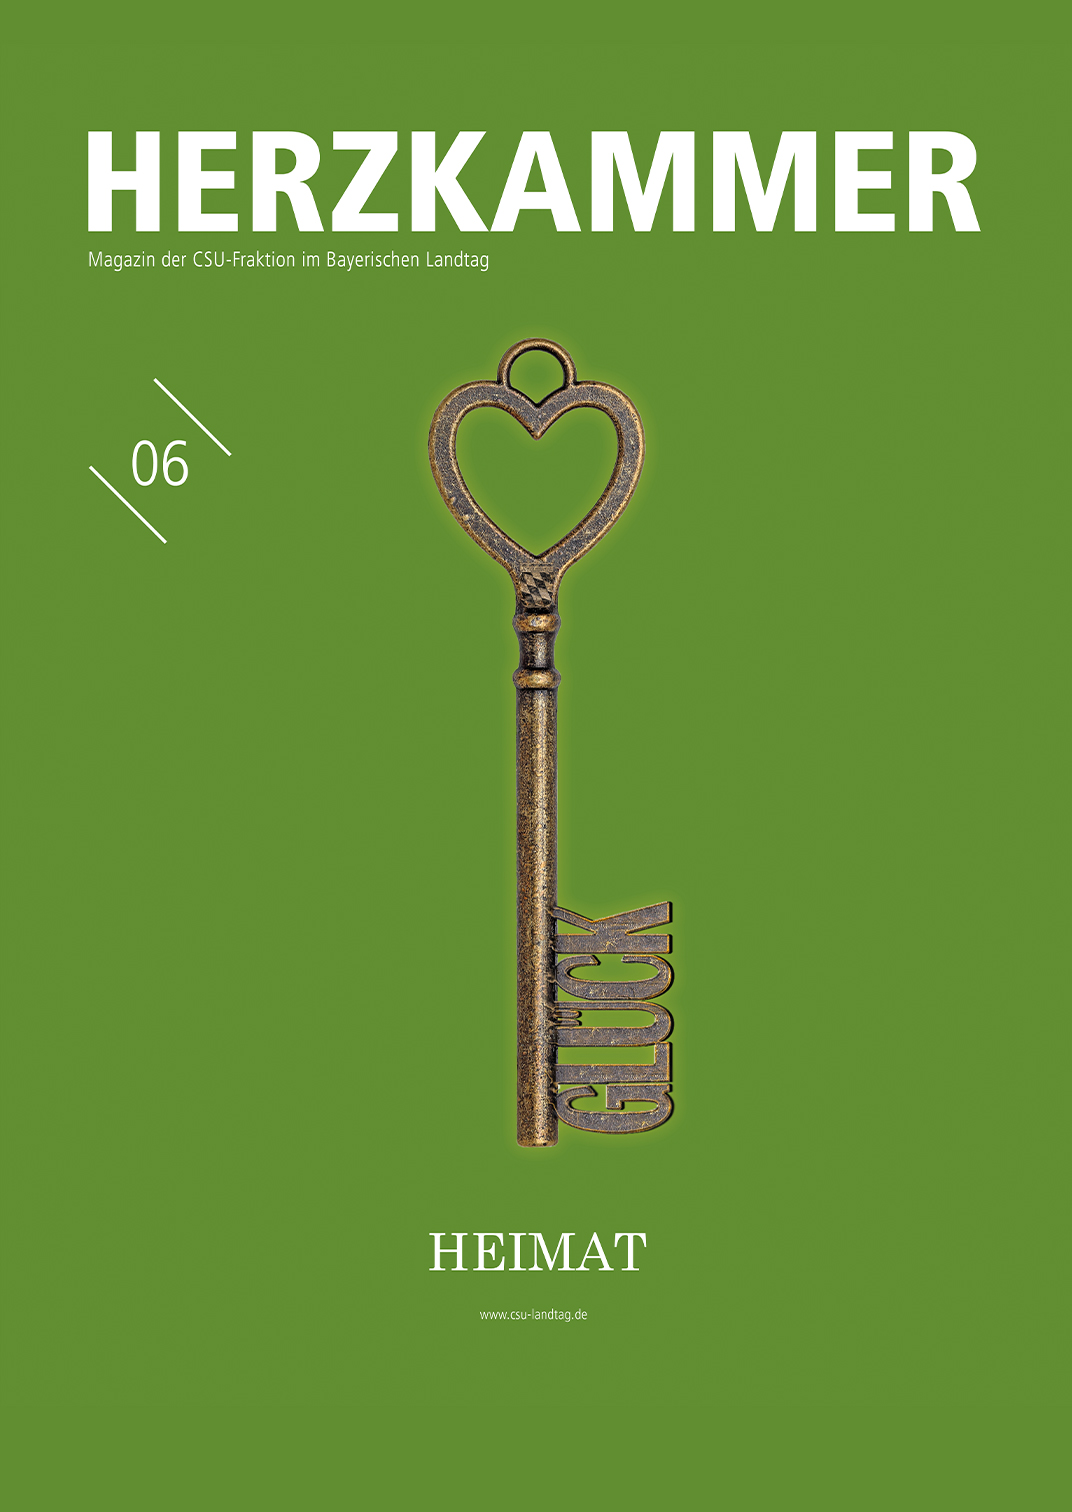 Cover der 8. Ausgabe der Herzkammer zum Thema Heimat. Schlüssel dessen Bart das Wort "Glück" ergibt und ein Schlüsselring in Form eines Herzens.